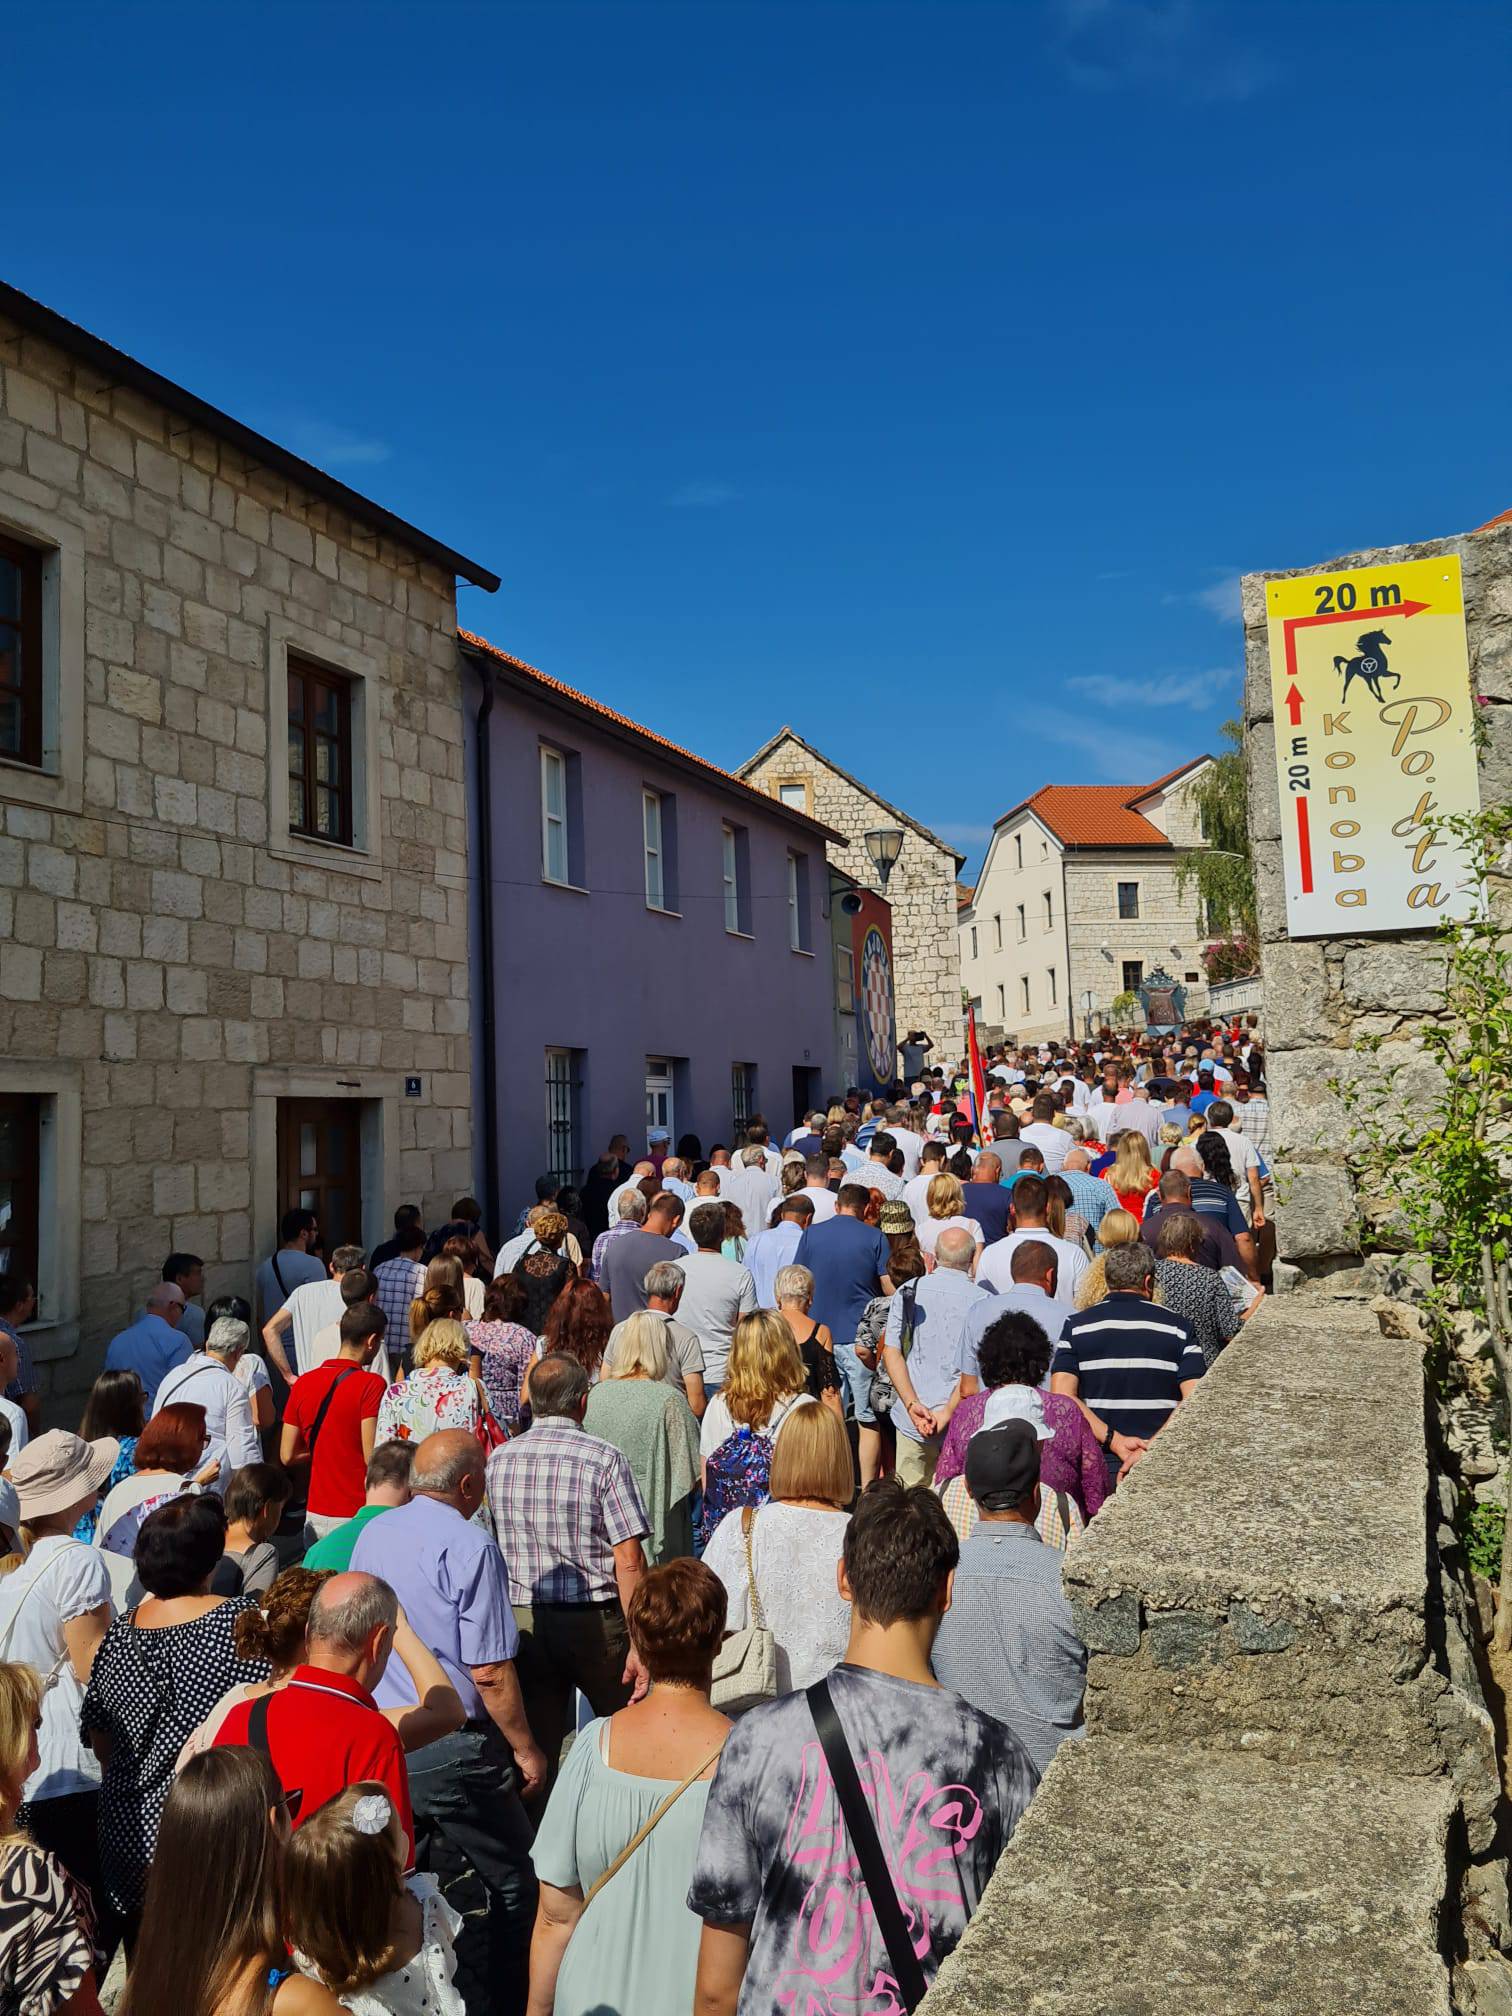 VIDEO Vjernici diljem Hrvatske hodočaste u marijanska svetišta